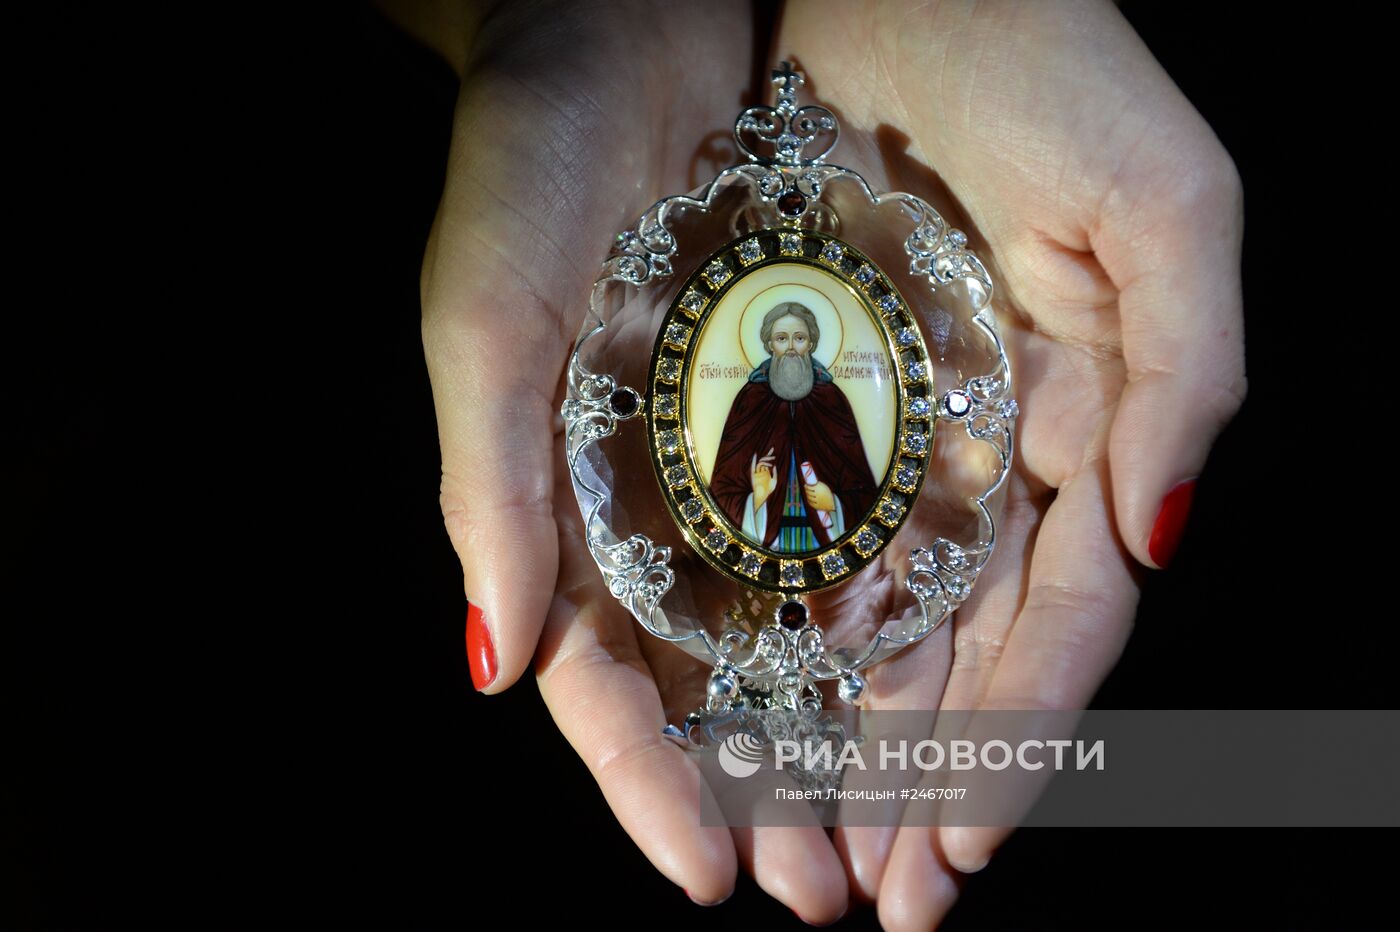 Хрустальная икона для Троице-Сергиевой Лавры изготовлена в Екатеринбурге